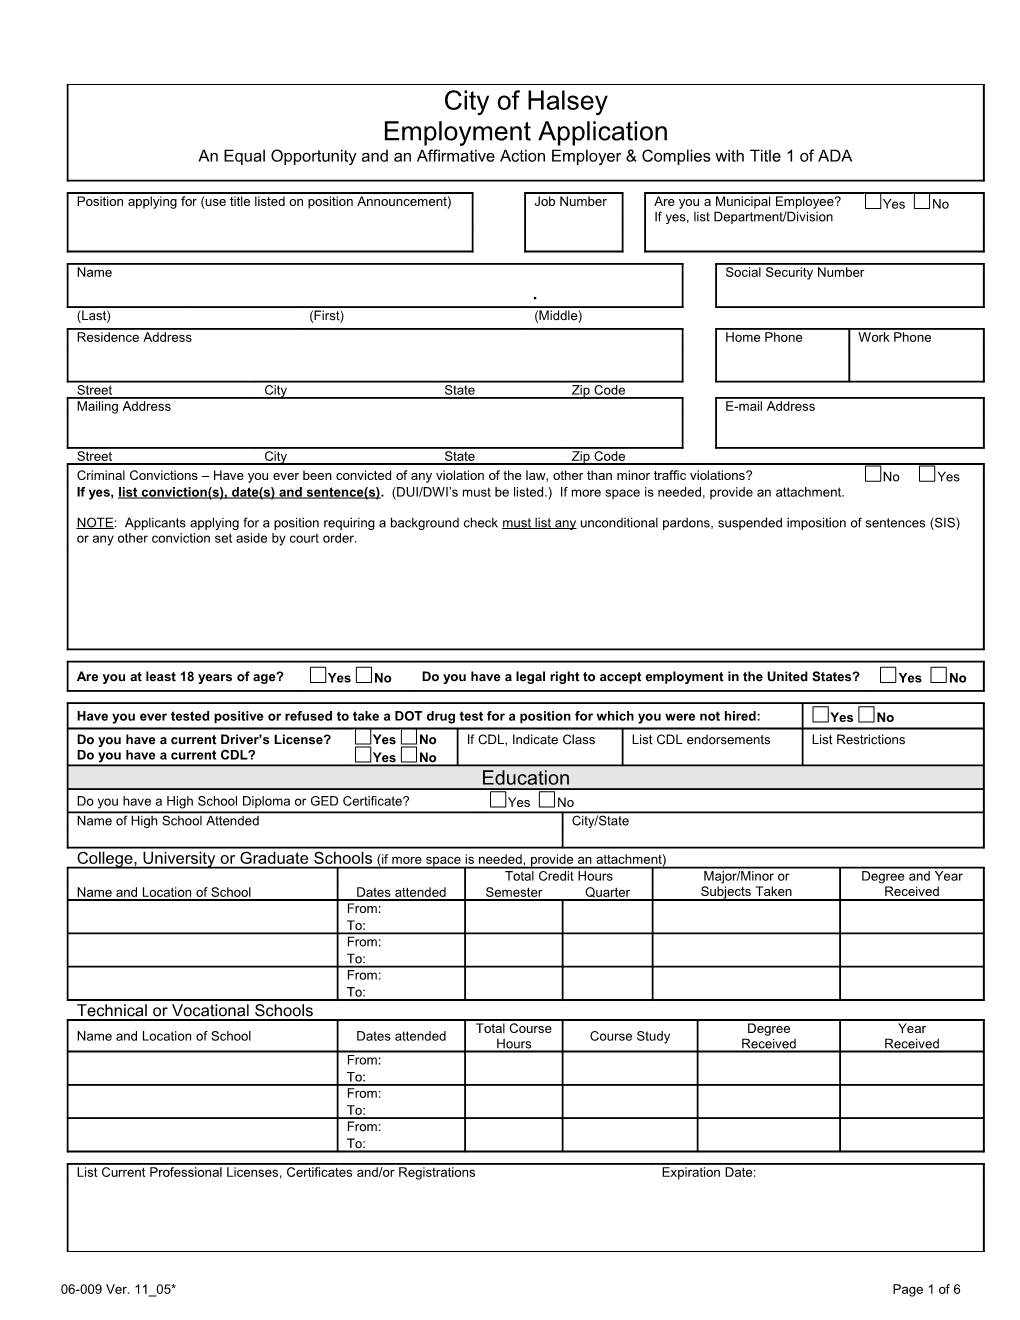 MOA Job Application Form